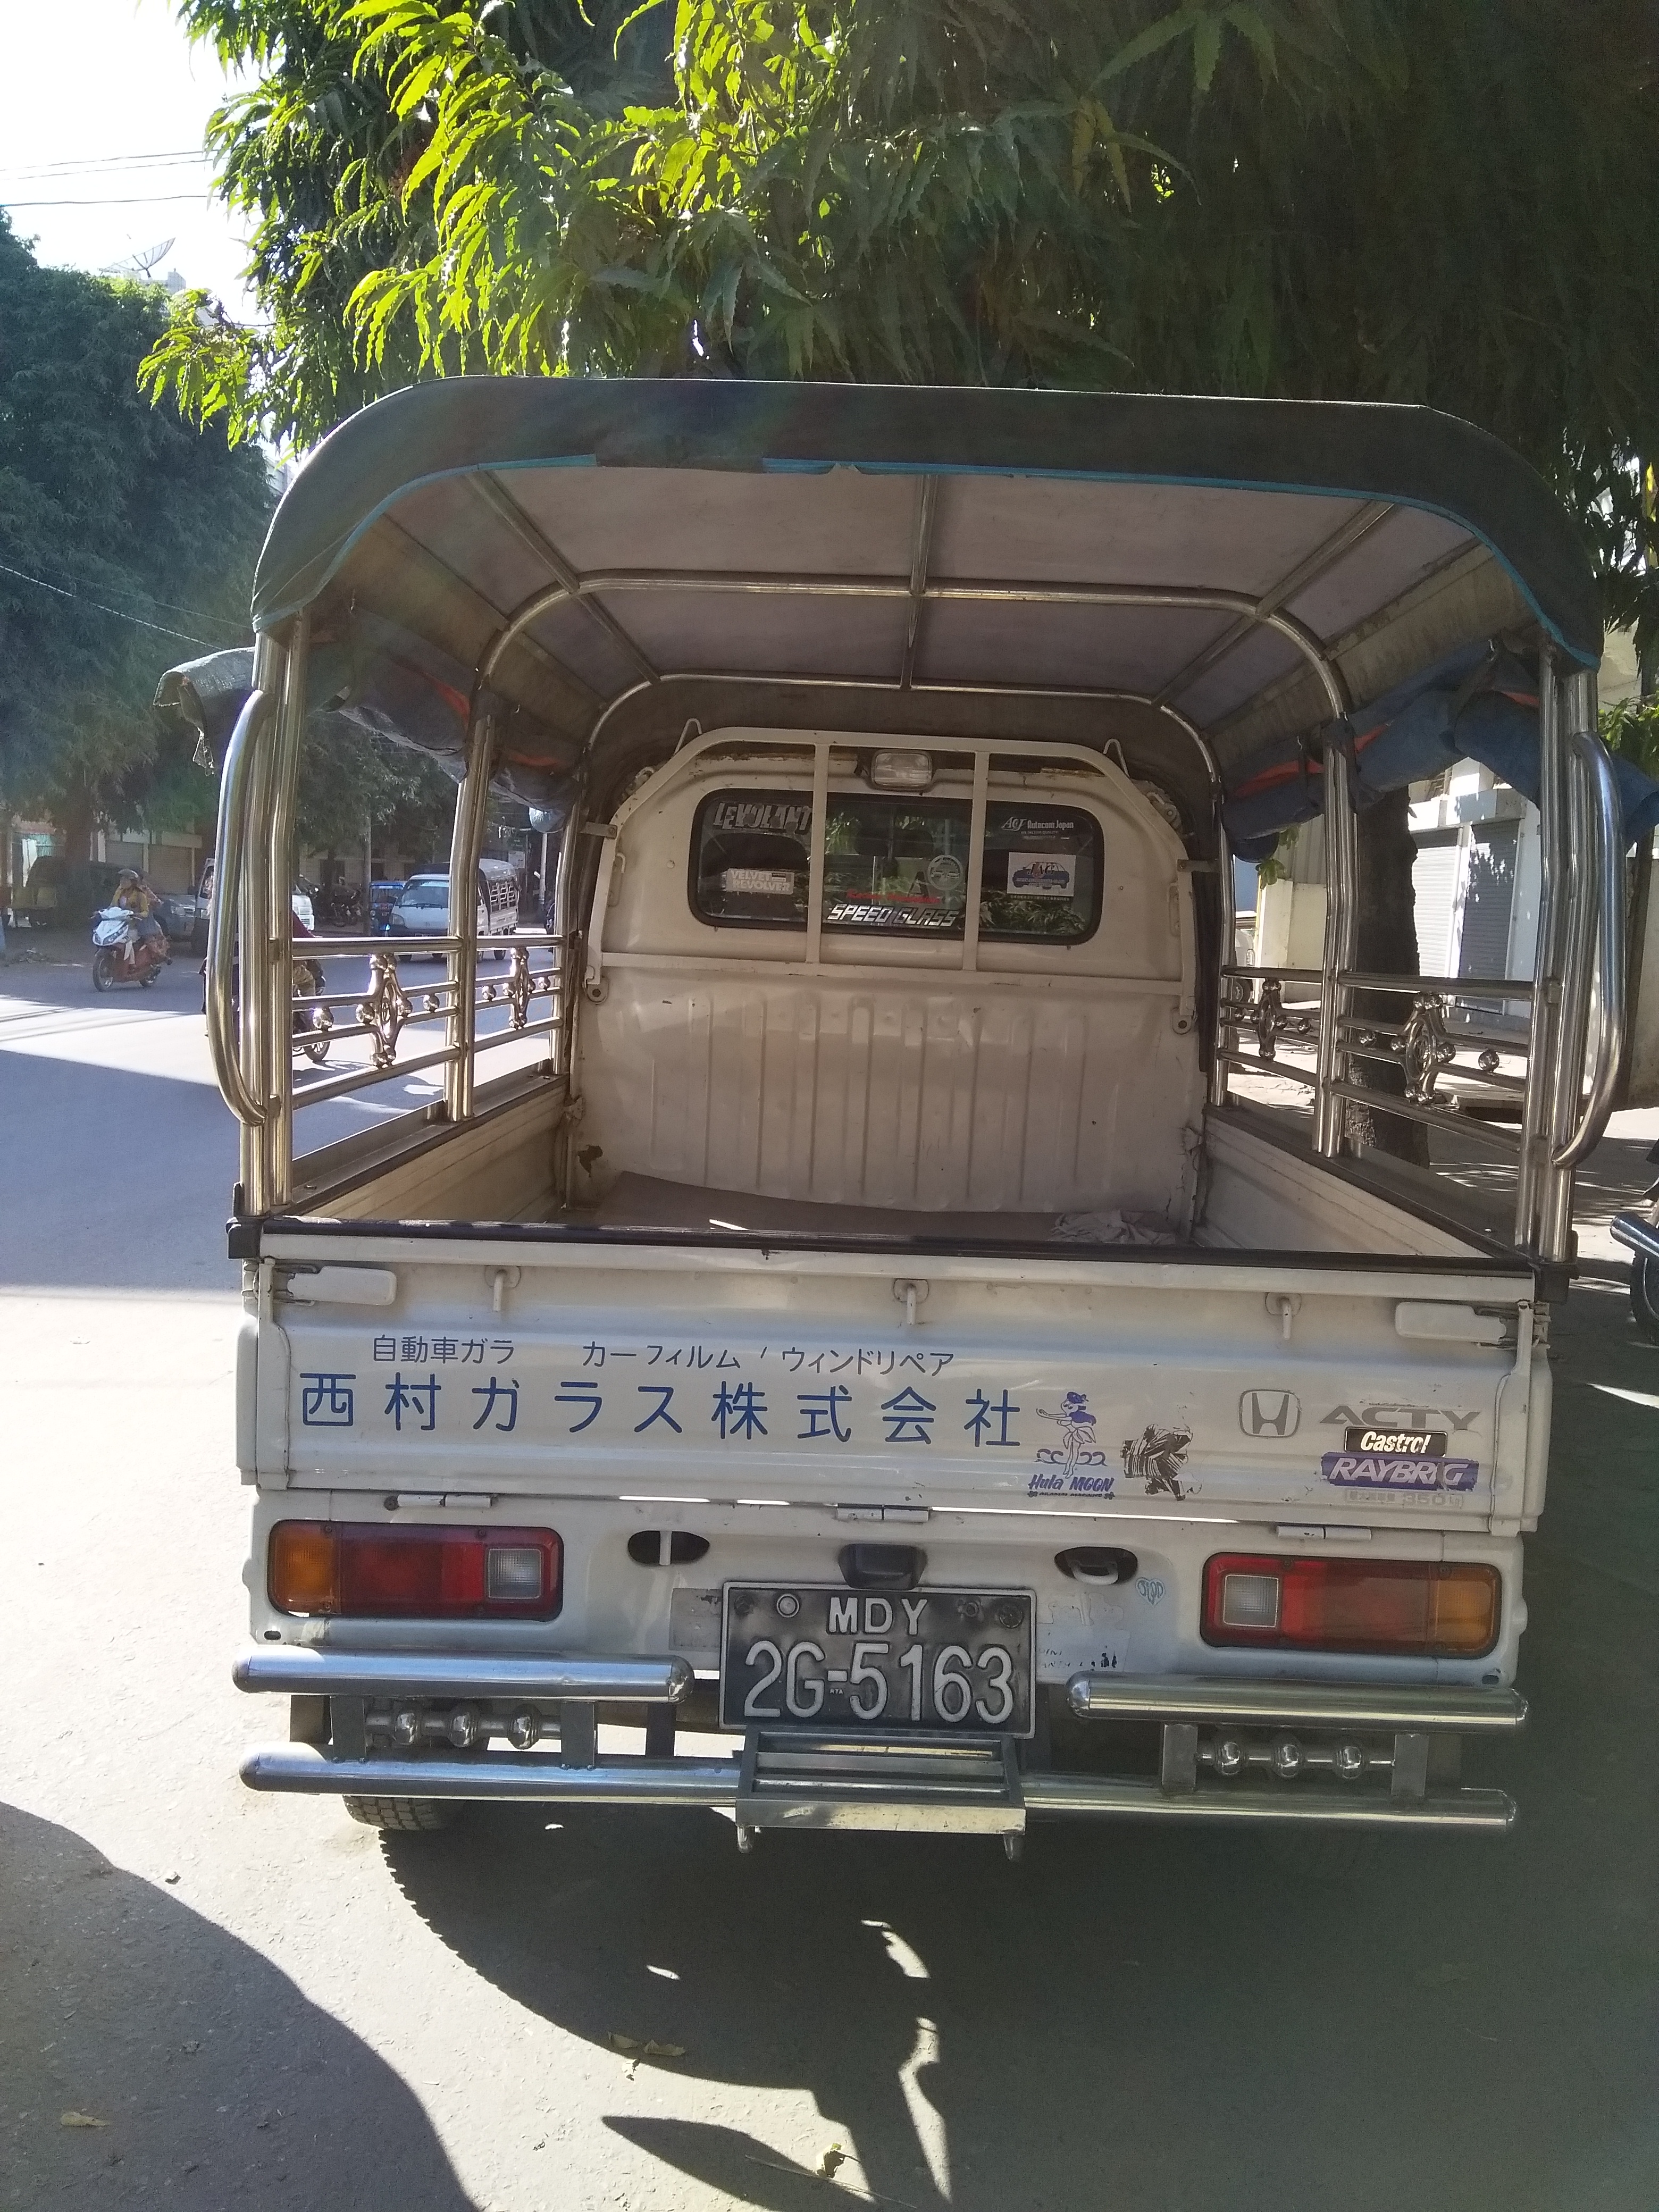 緬甸大量使用日本舊車2